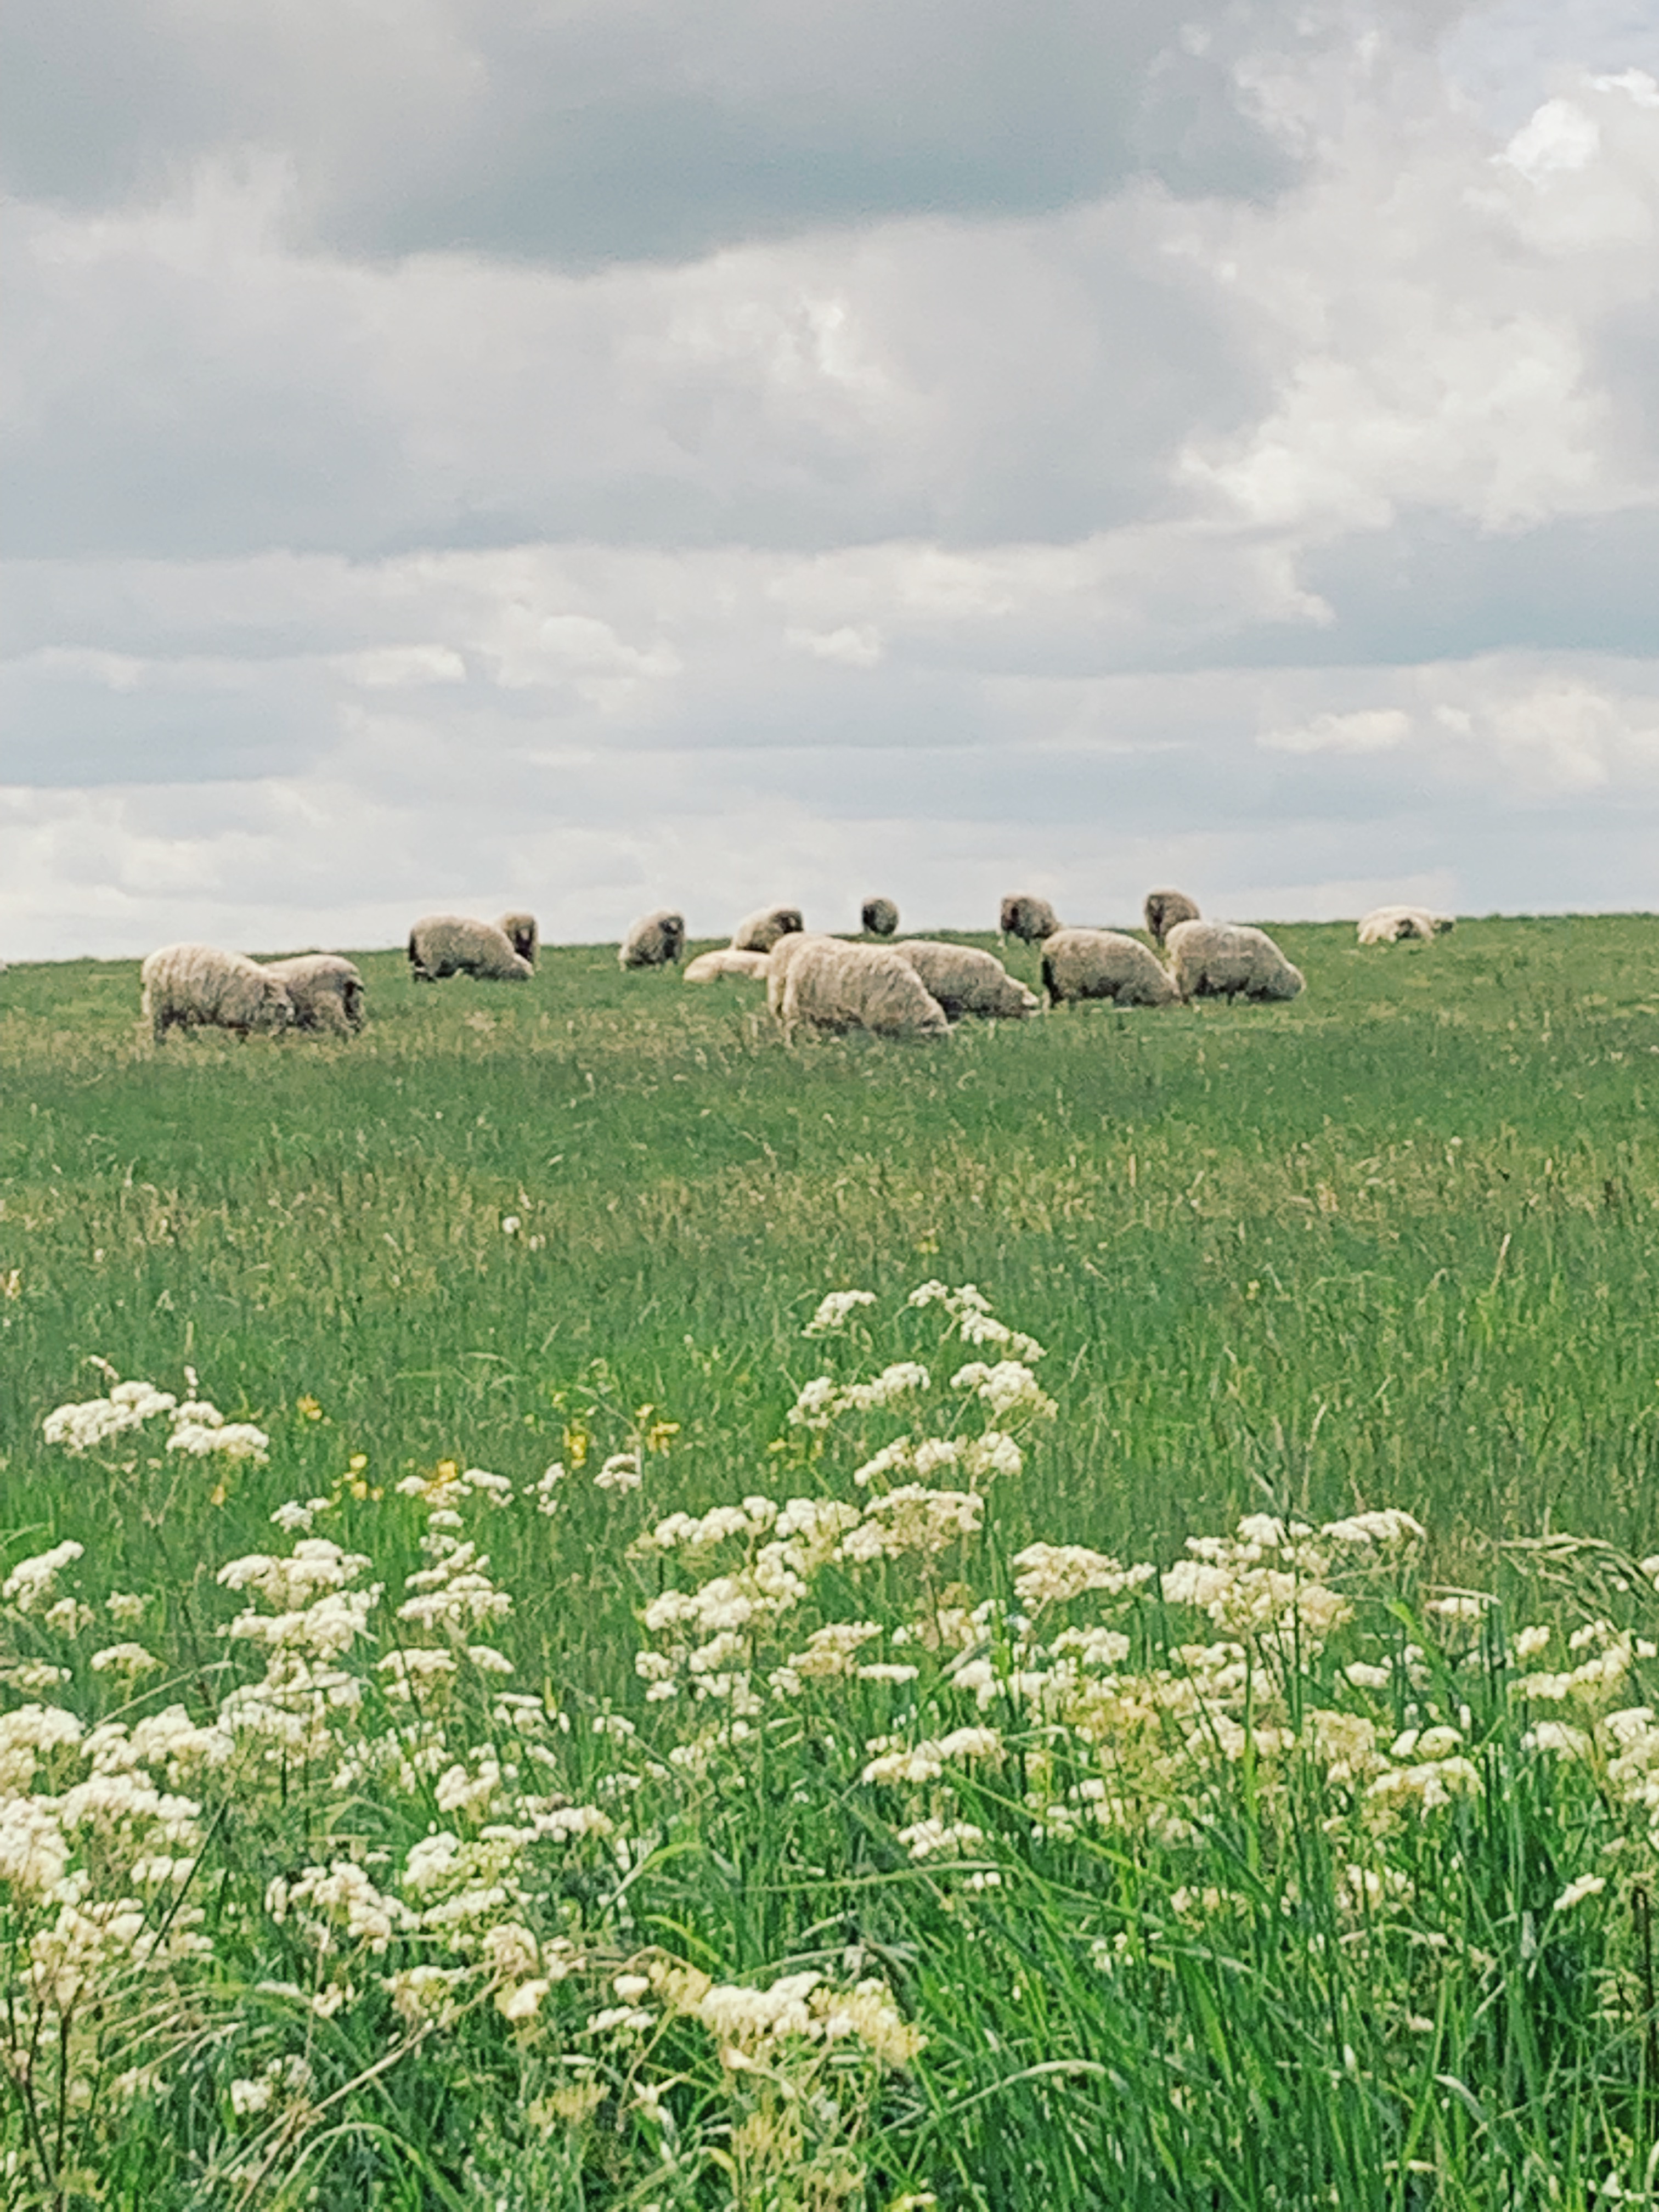 Sheep grazing in fields around Stonehenge